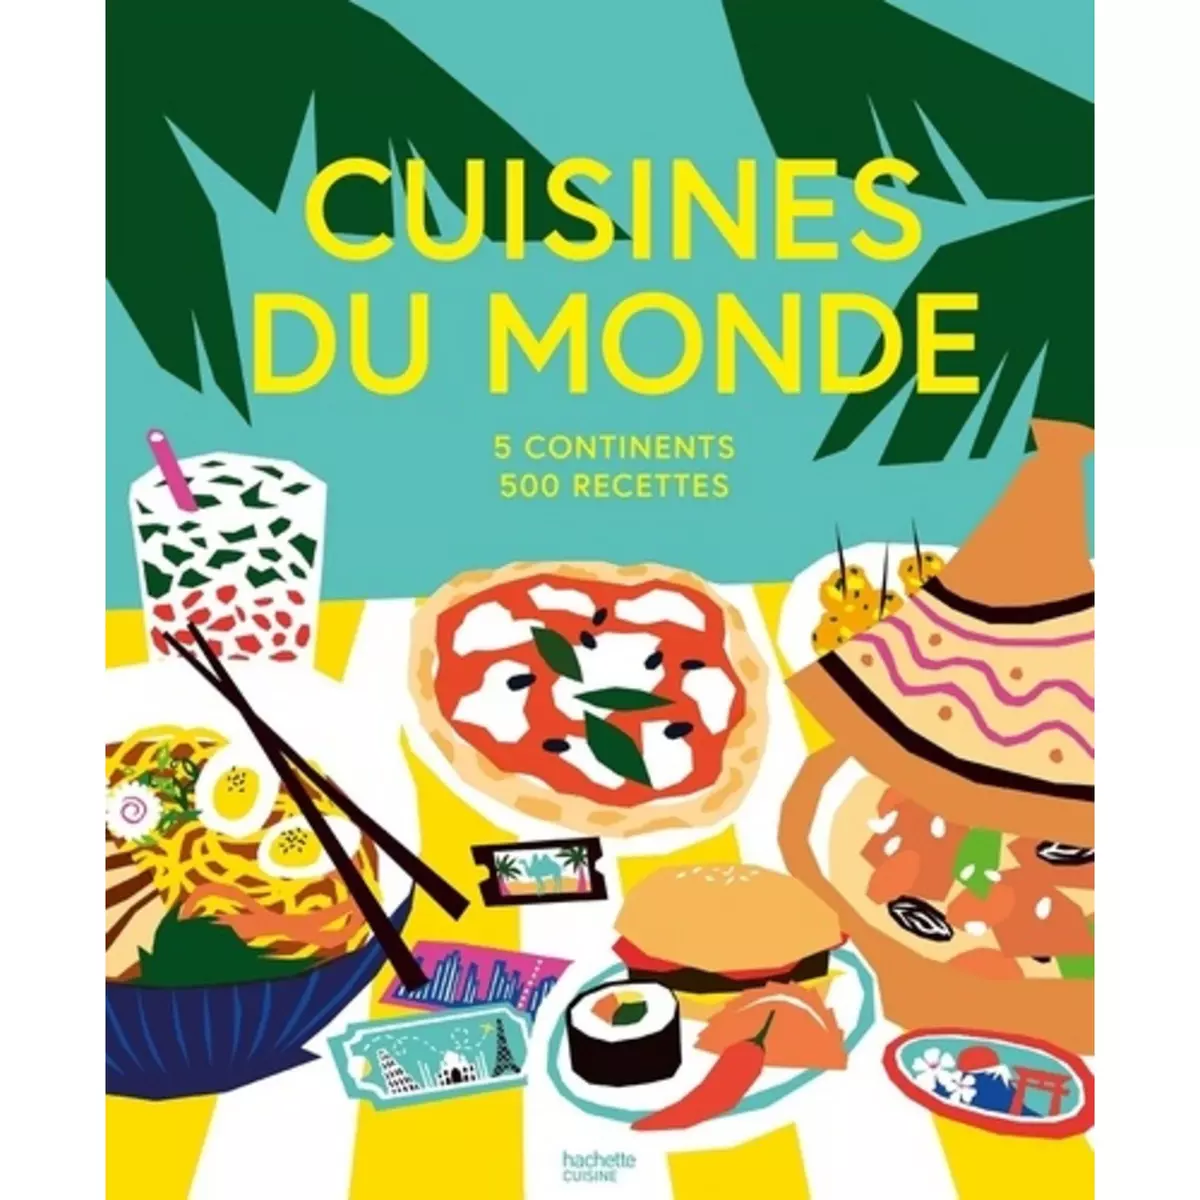  CUISINES DU MONDE. 5 CONTINENTS, 500 RECETTES, Hachette